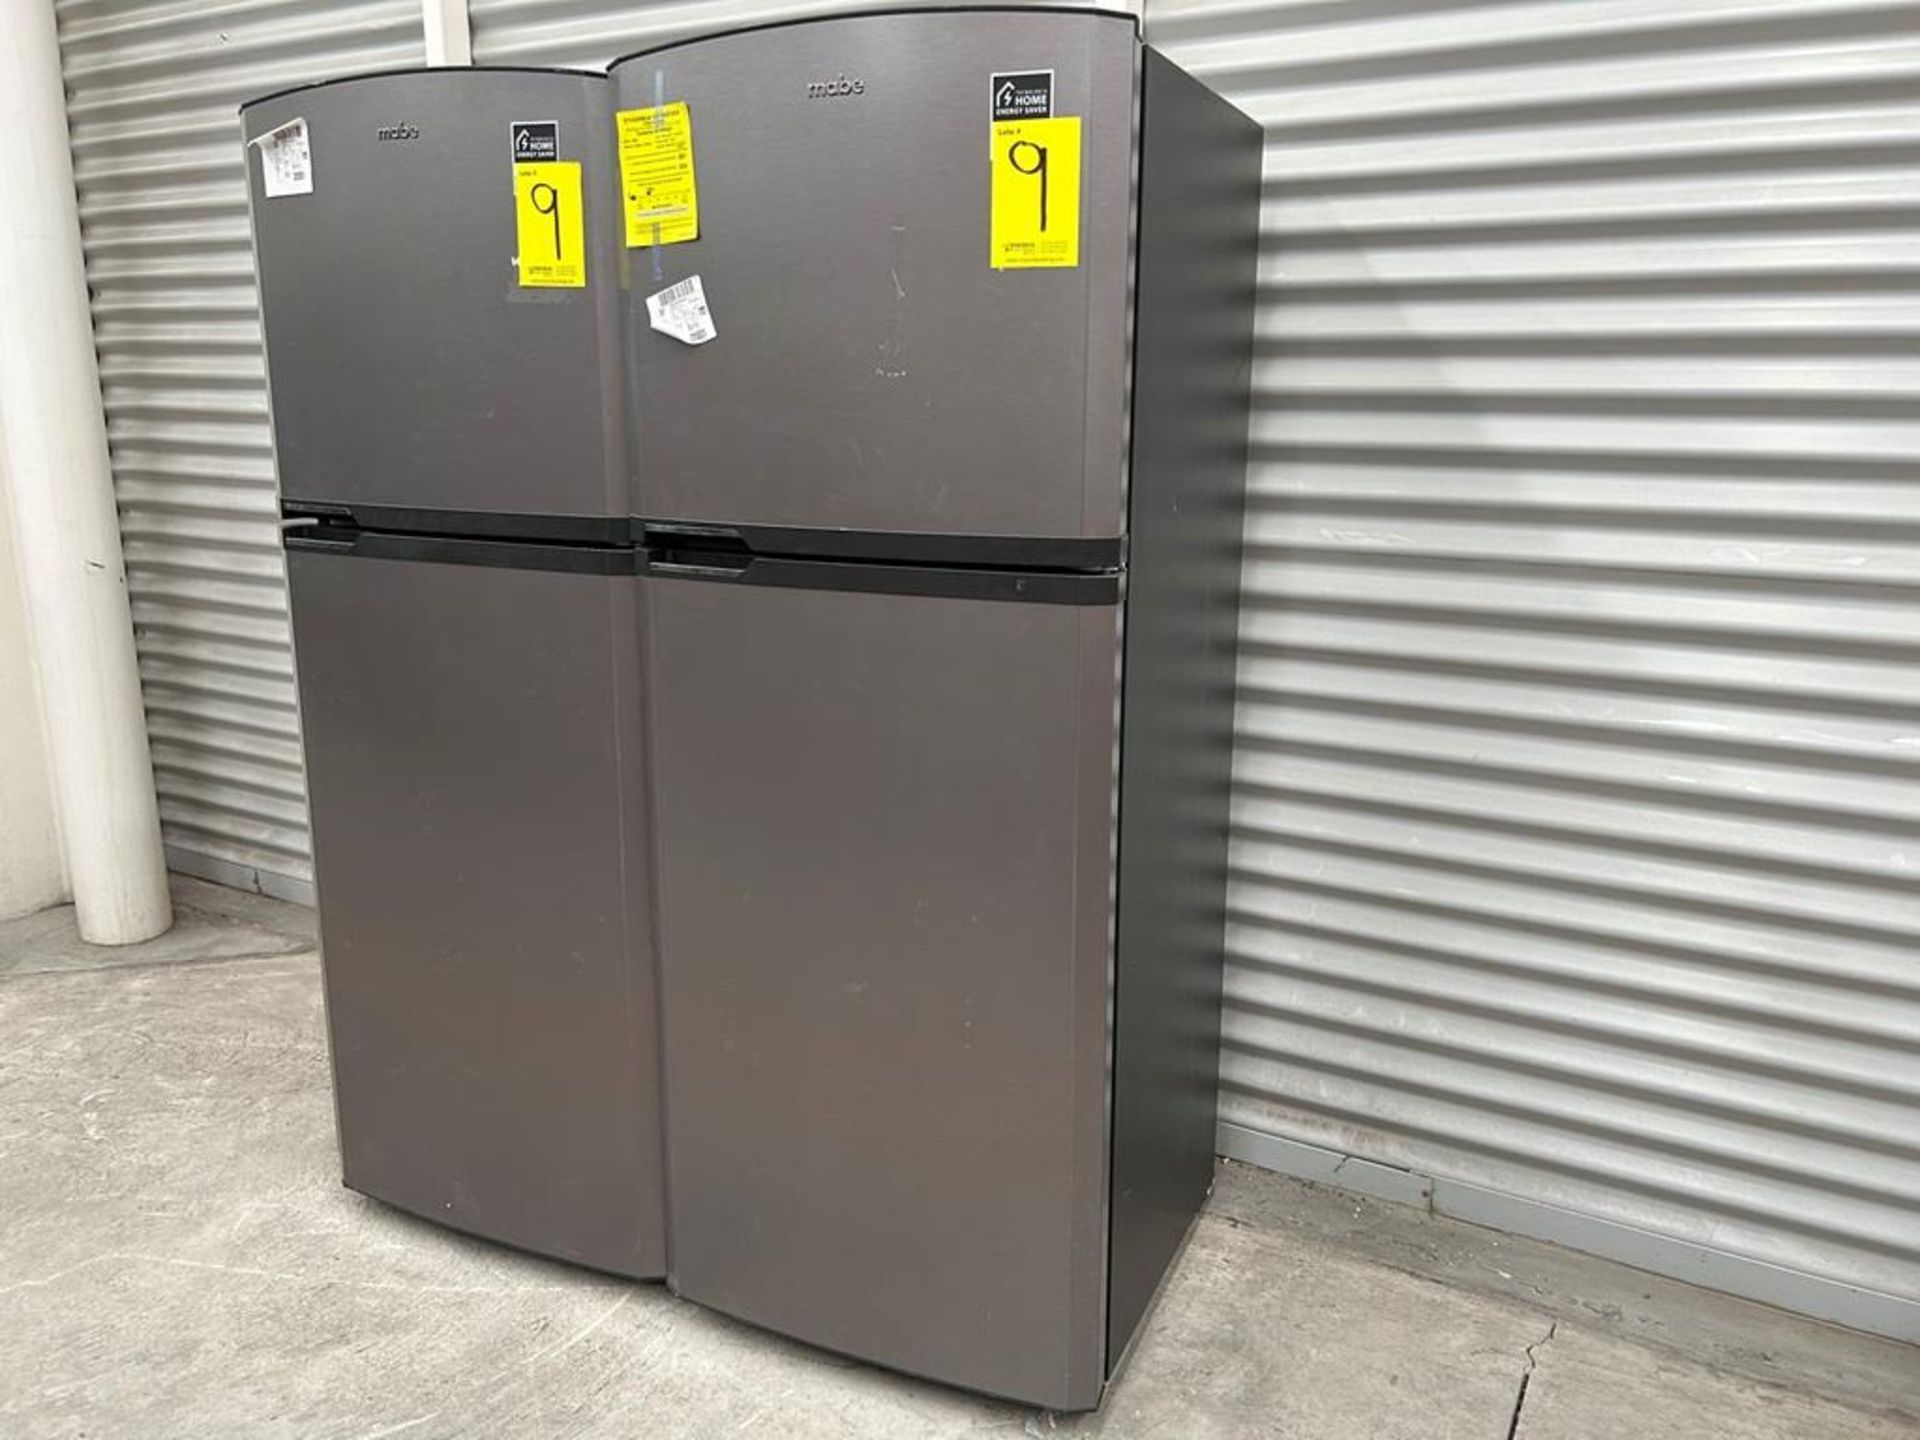 Lote de 2 refrigeradores contiene: 1 Refrigerador Marca MABE, Modelo RME360PVMRM0, Serie 01177, Col - Image 2 of 18